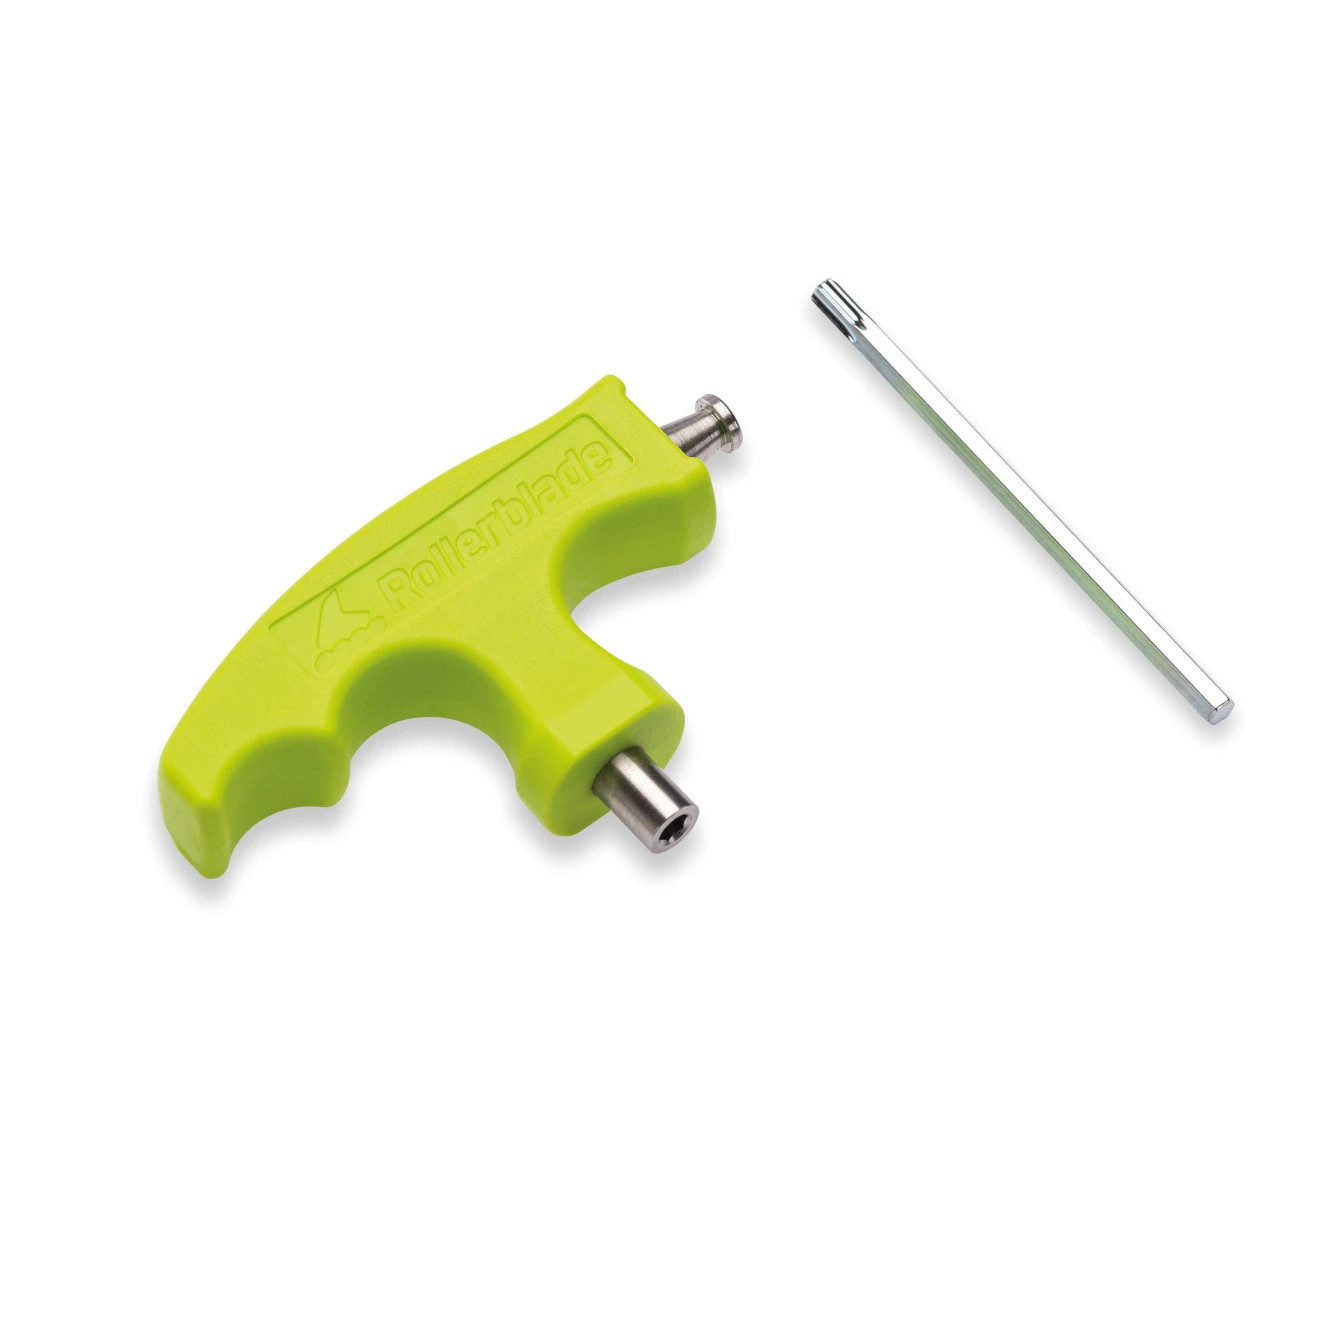 Produktbild von Rollerblade Bladetool Pro - Inline-Skate-Schlüssel Innensechskant/Torx - grün